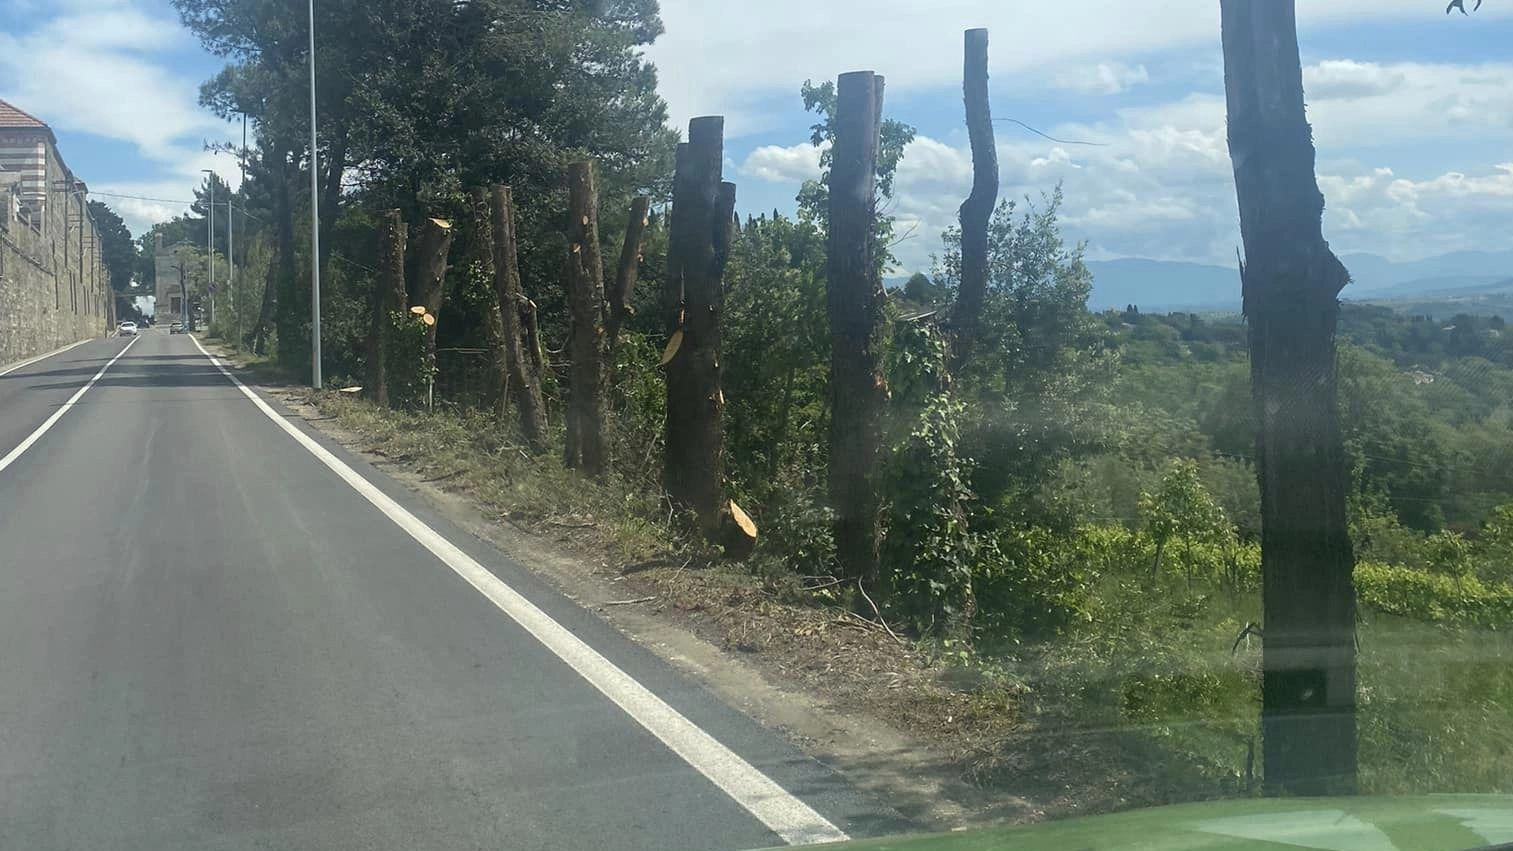 Piante addio "Il Giro d’Italia falcia gli alberi". La replica di Pastorelli: "Solo potature"